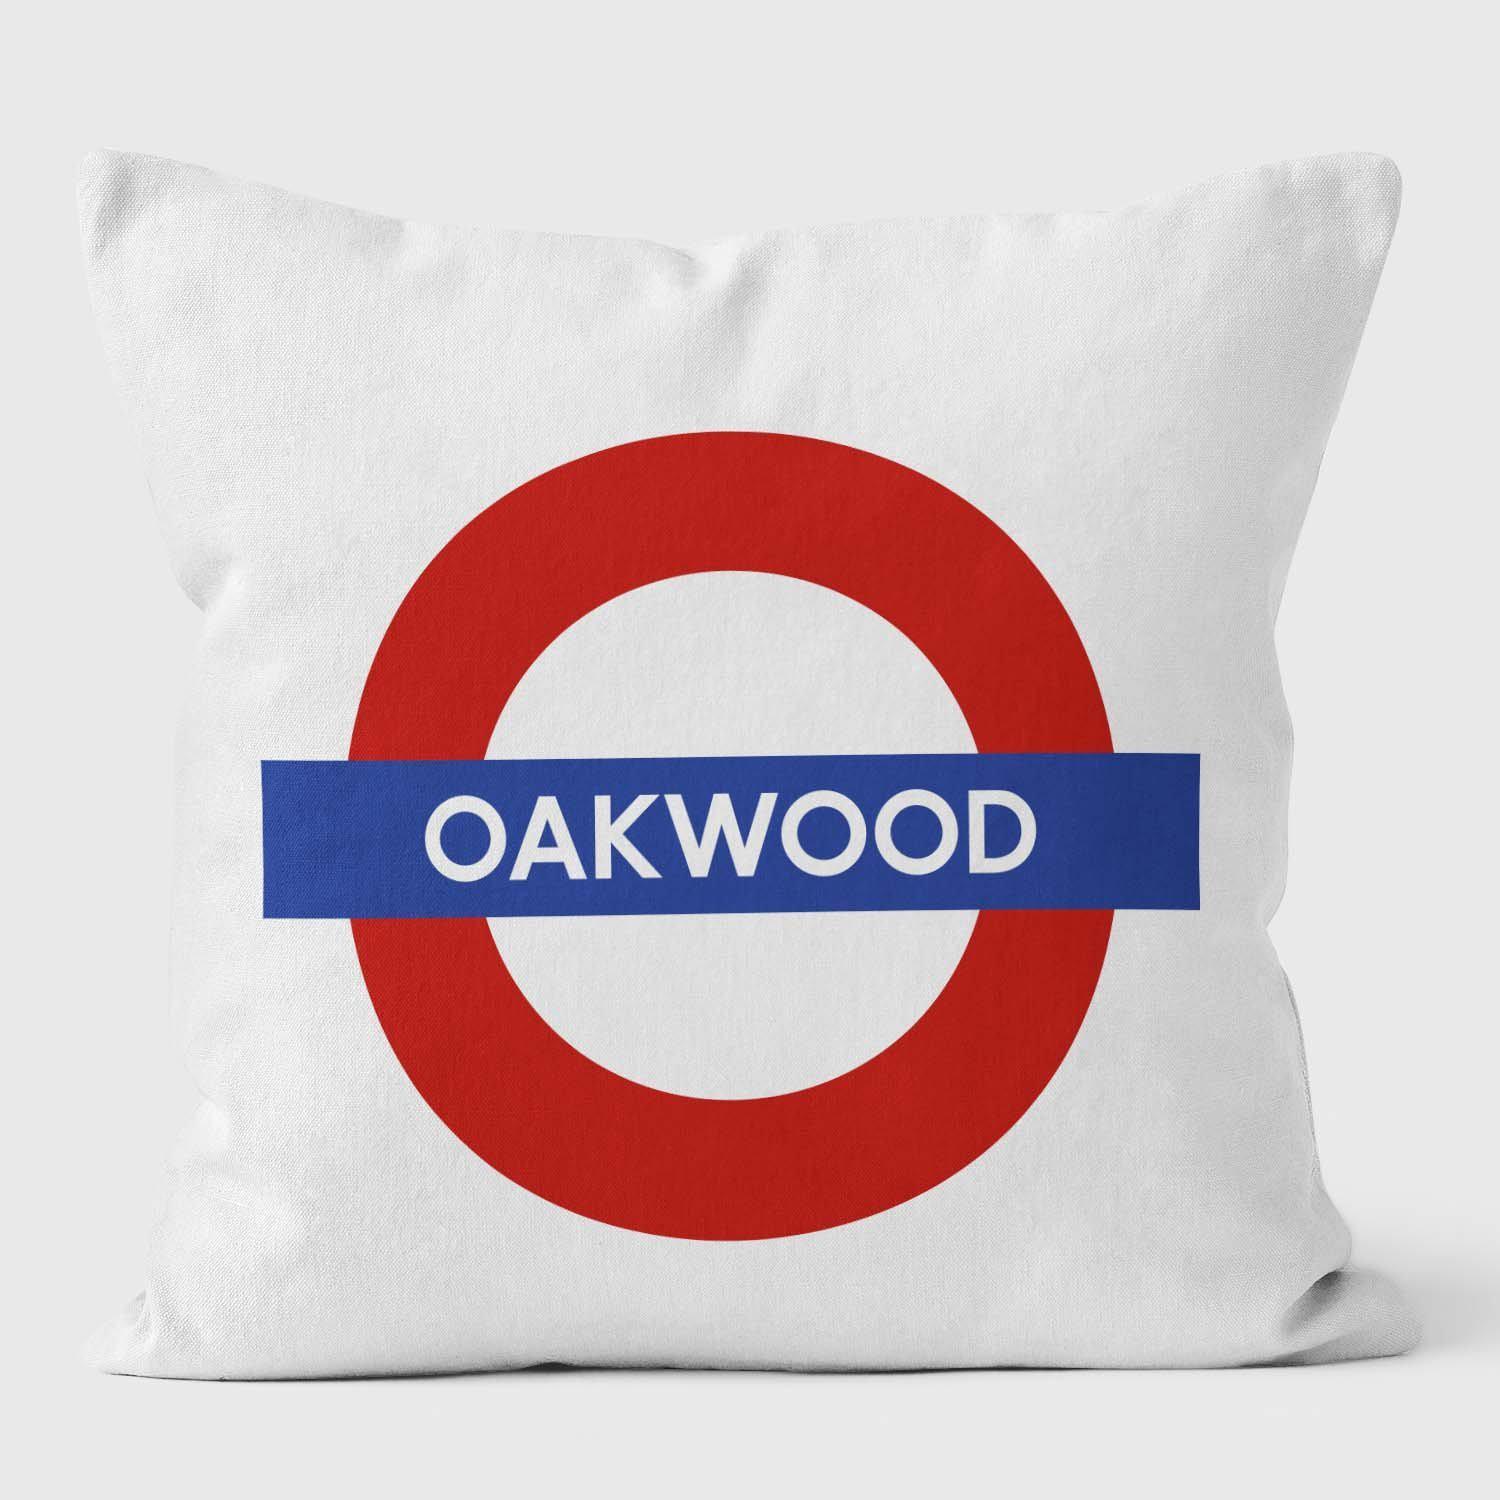 Oakwood London Underground Tube Station Roundel Cushion - Handmade Cushions UK - WeLoveCushions